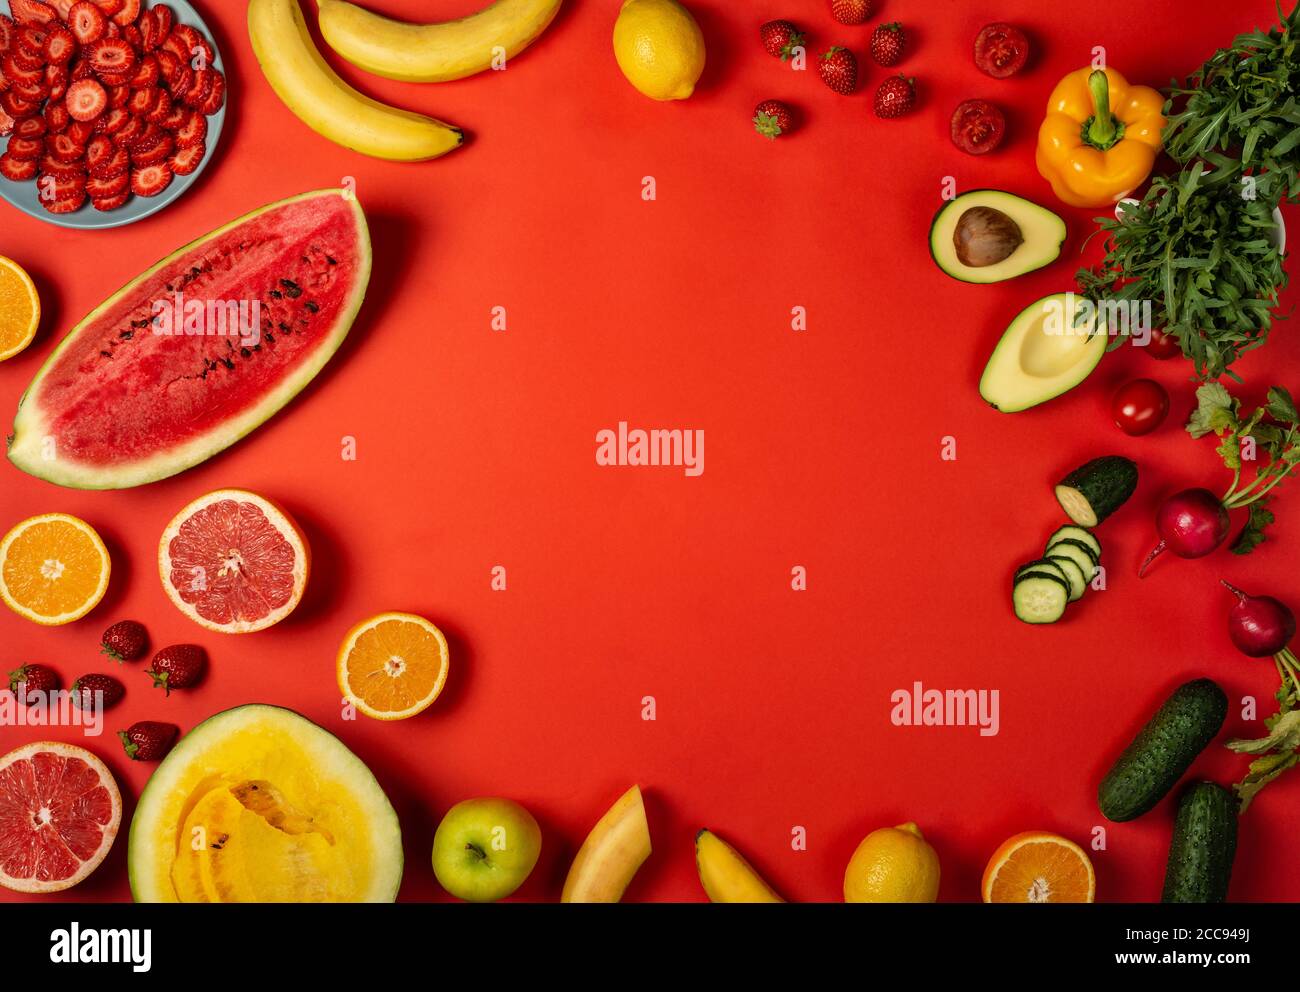 Thực đơn ăn uống từ hoa quả và rau trên nền đỏ chắc chắn sẽ mang đến cho bạn một trải nghiệm tuyệt vời. Hãy để mình đắm chìm vào một không gian ăn uống xanh sạch, giàu dinh dưỡng và đầy màu sắc trên nền đỏ đẹp mắt. 